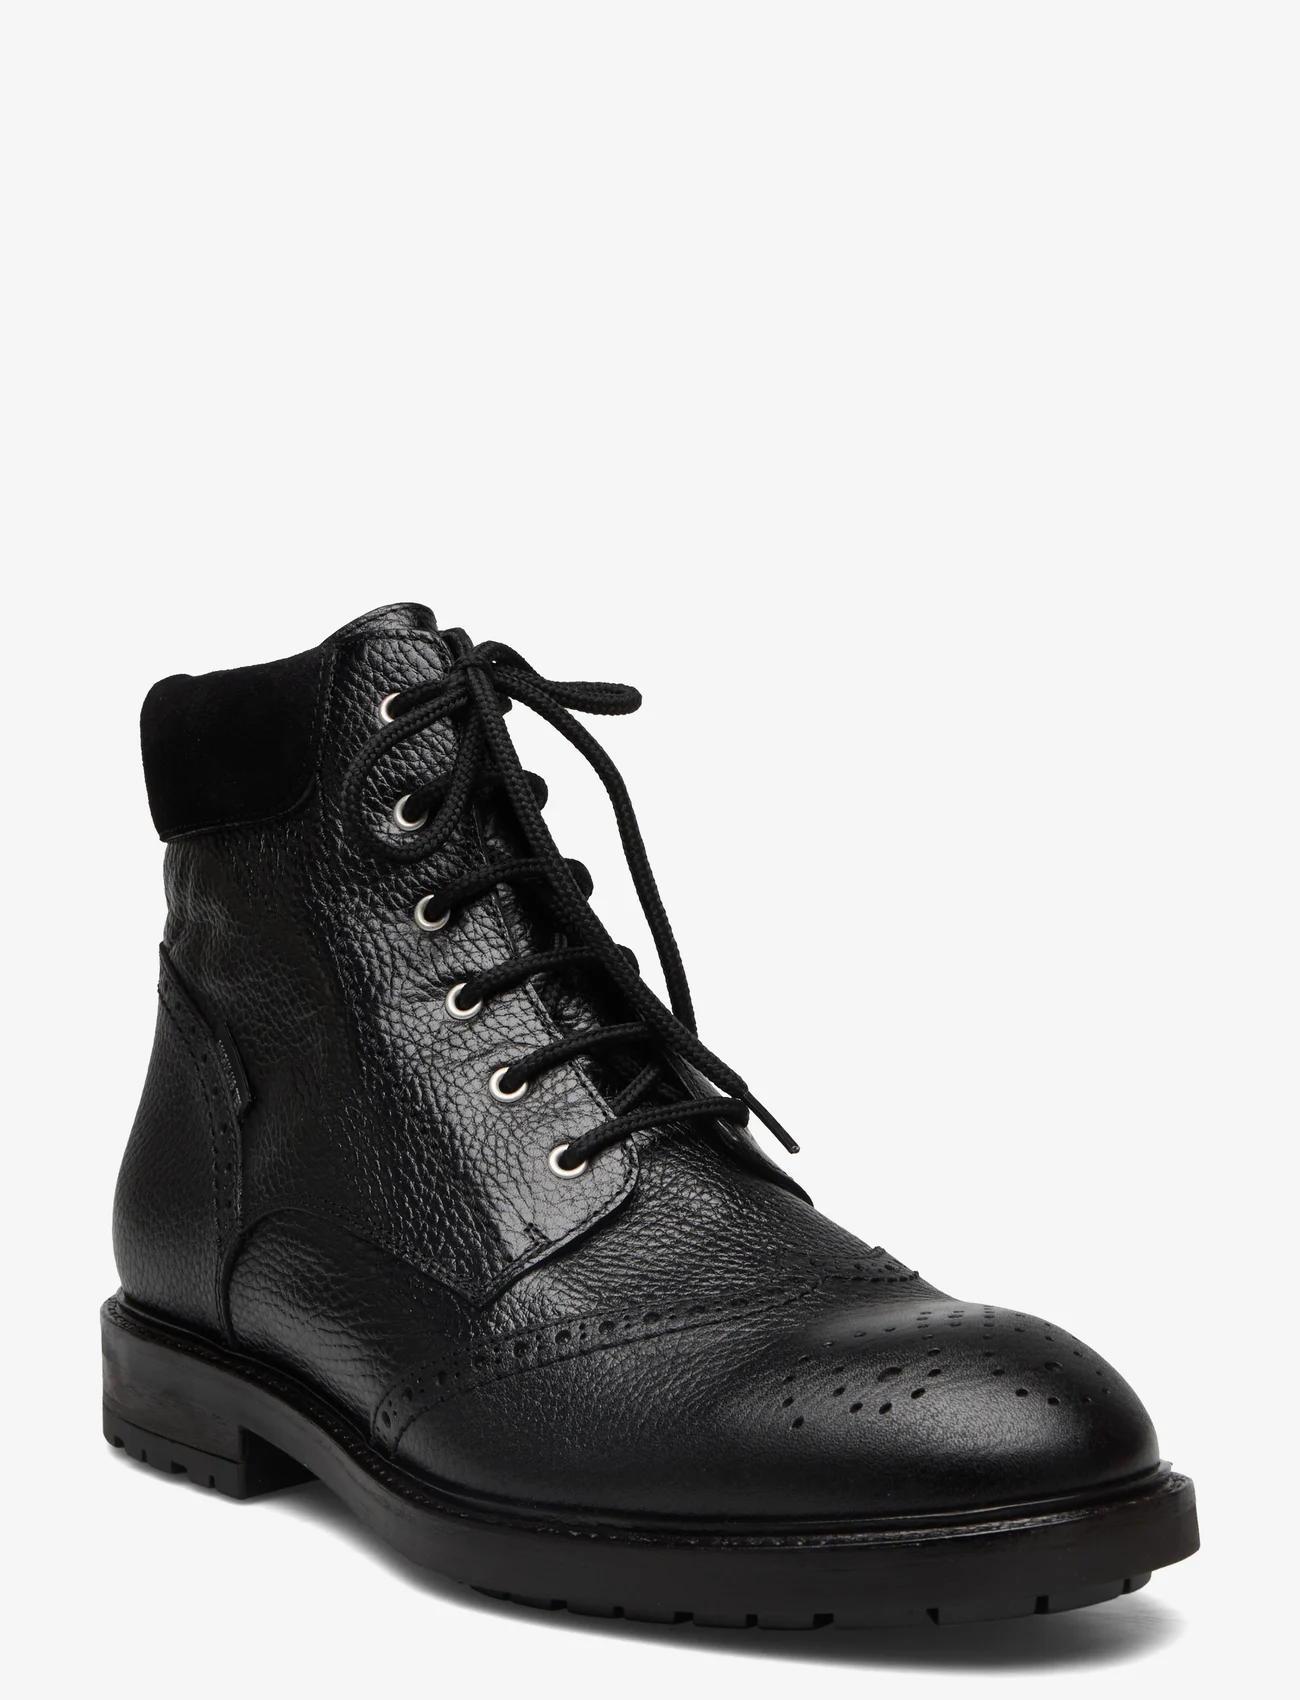 ANGULUS - Shoes - flat - with lace - paeltega jalanõud - 2504/1163 black/black - 0